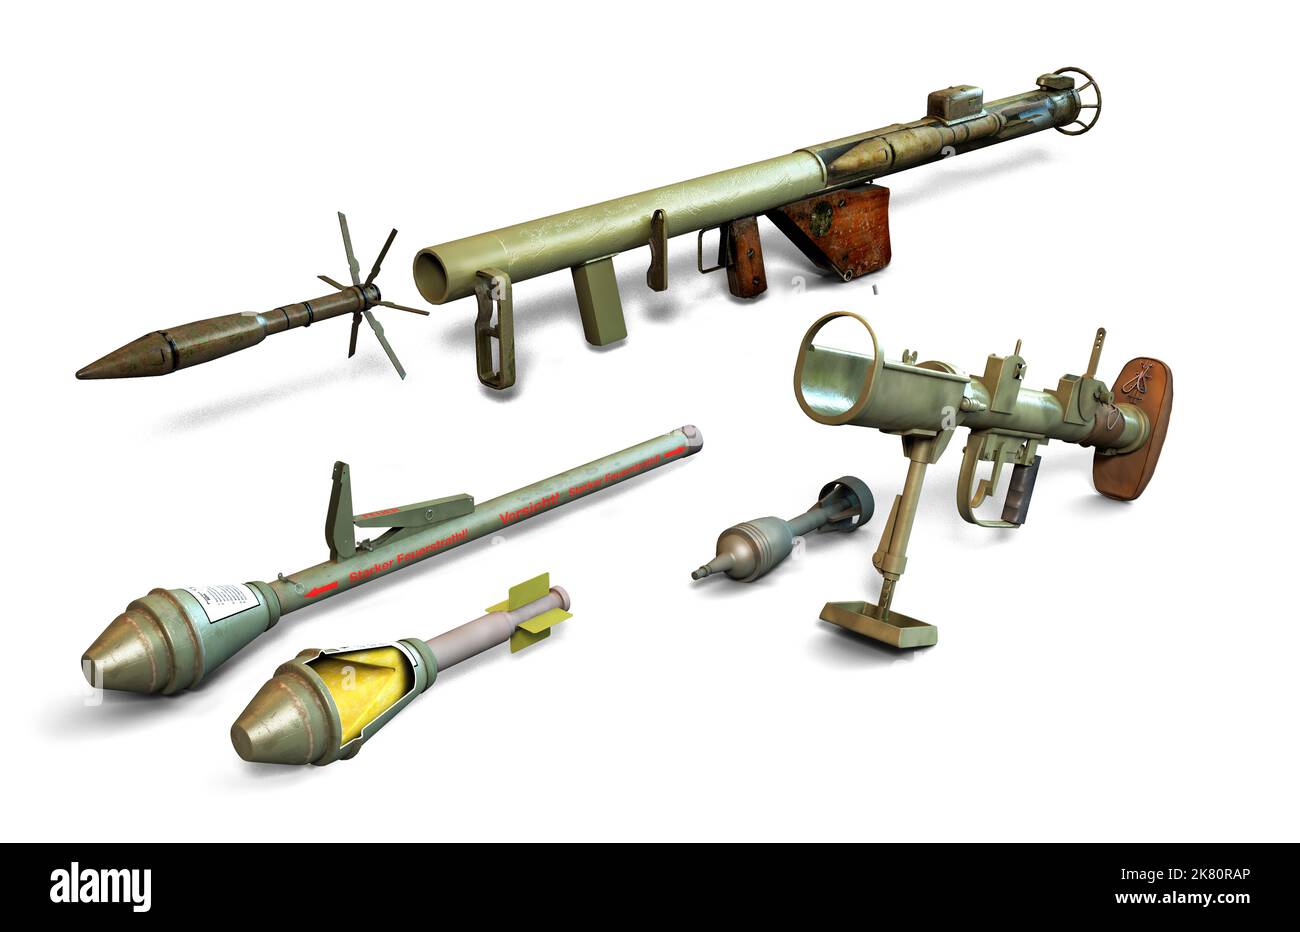 Illustrazione del Bazooka americano, del Panzerfaust tedesco e del PIAT britannico. Foto Stock